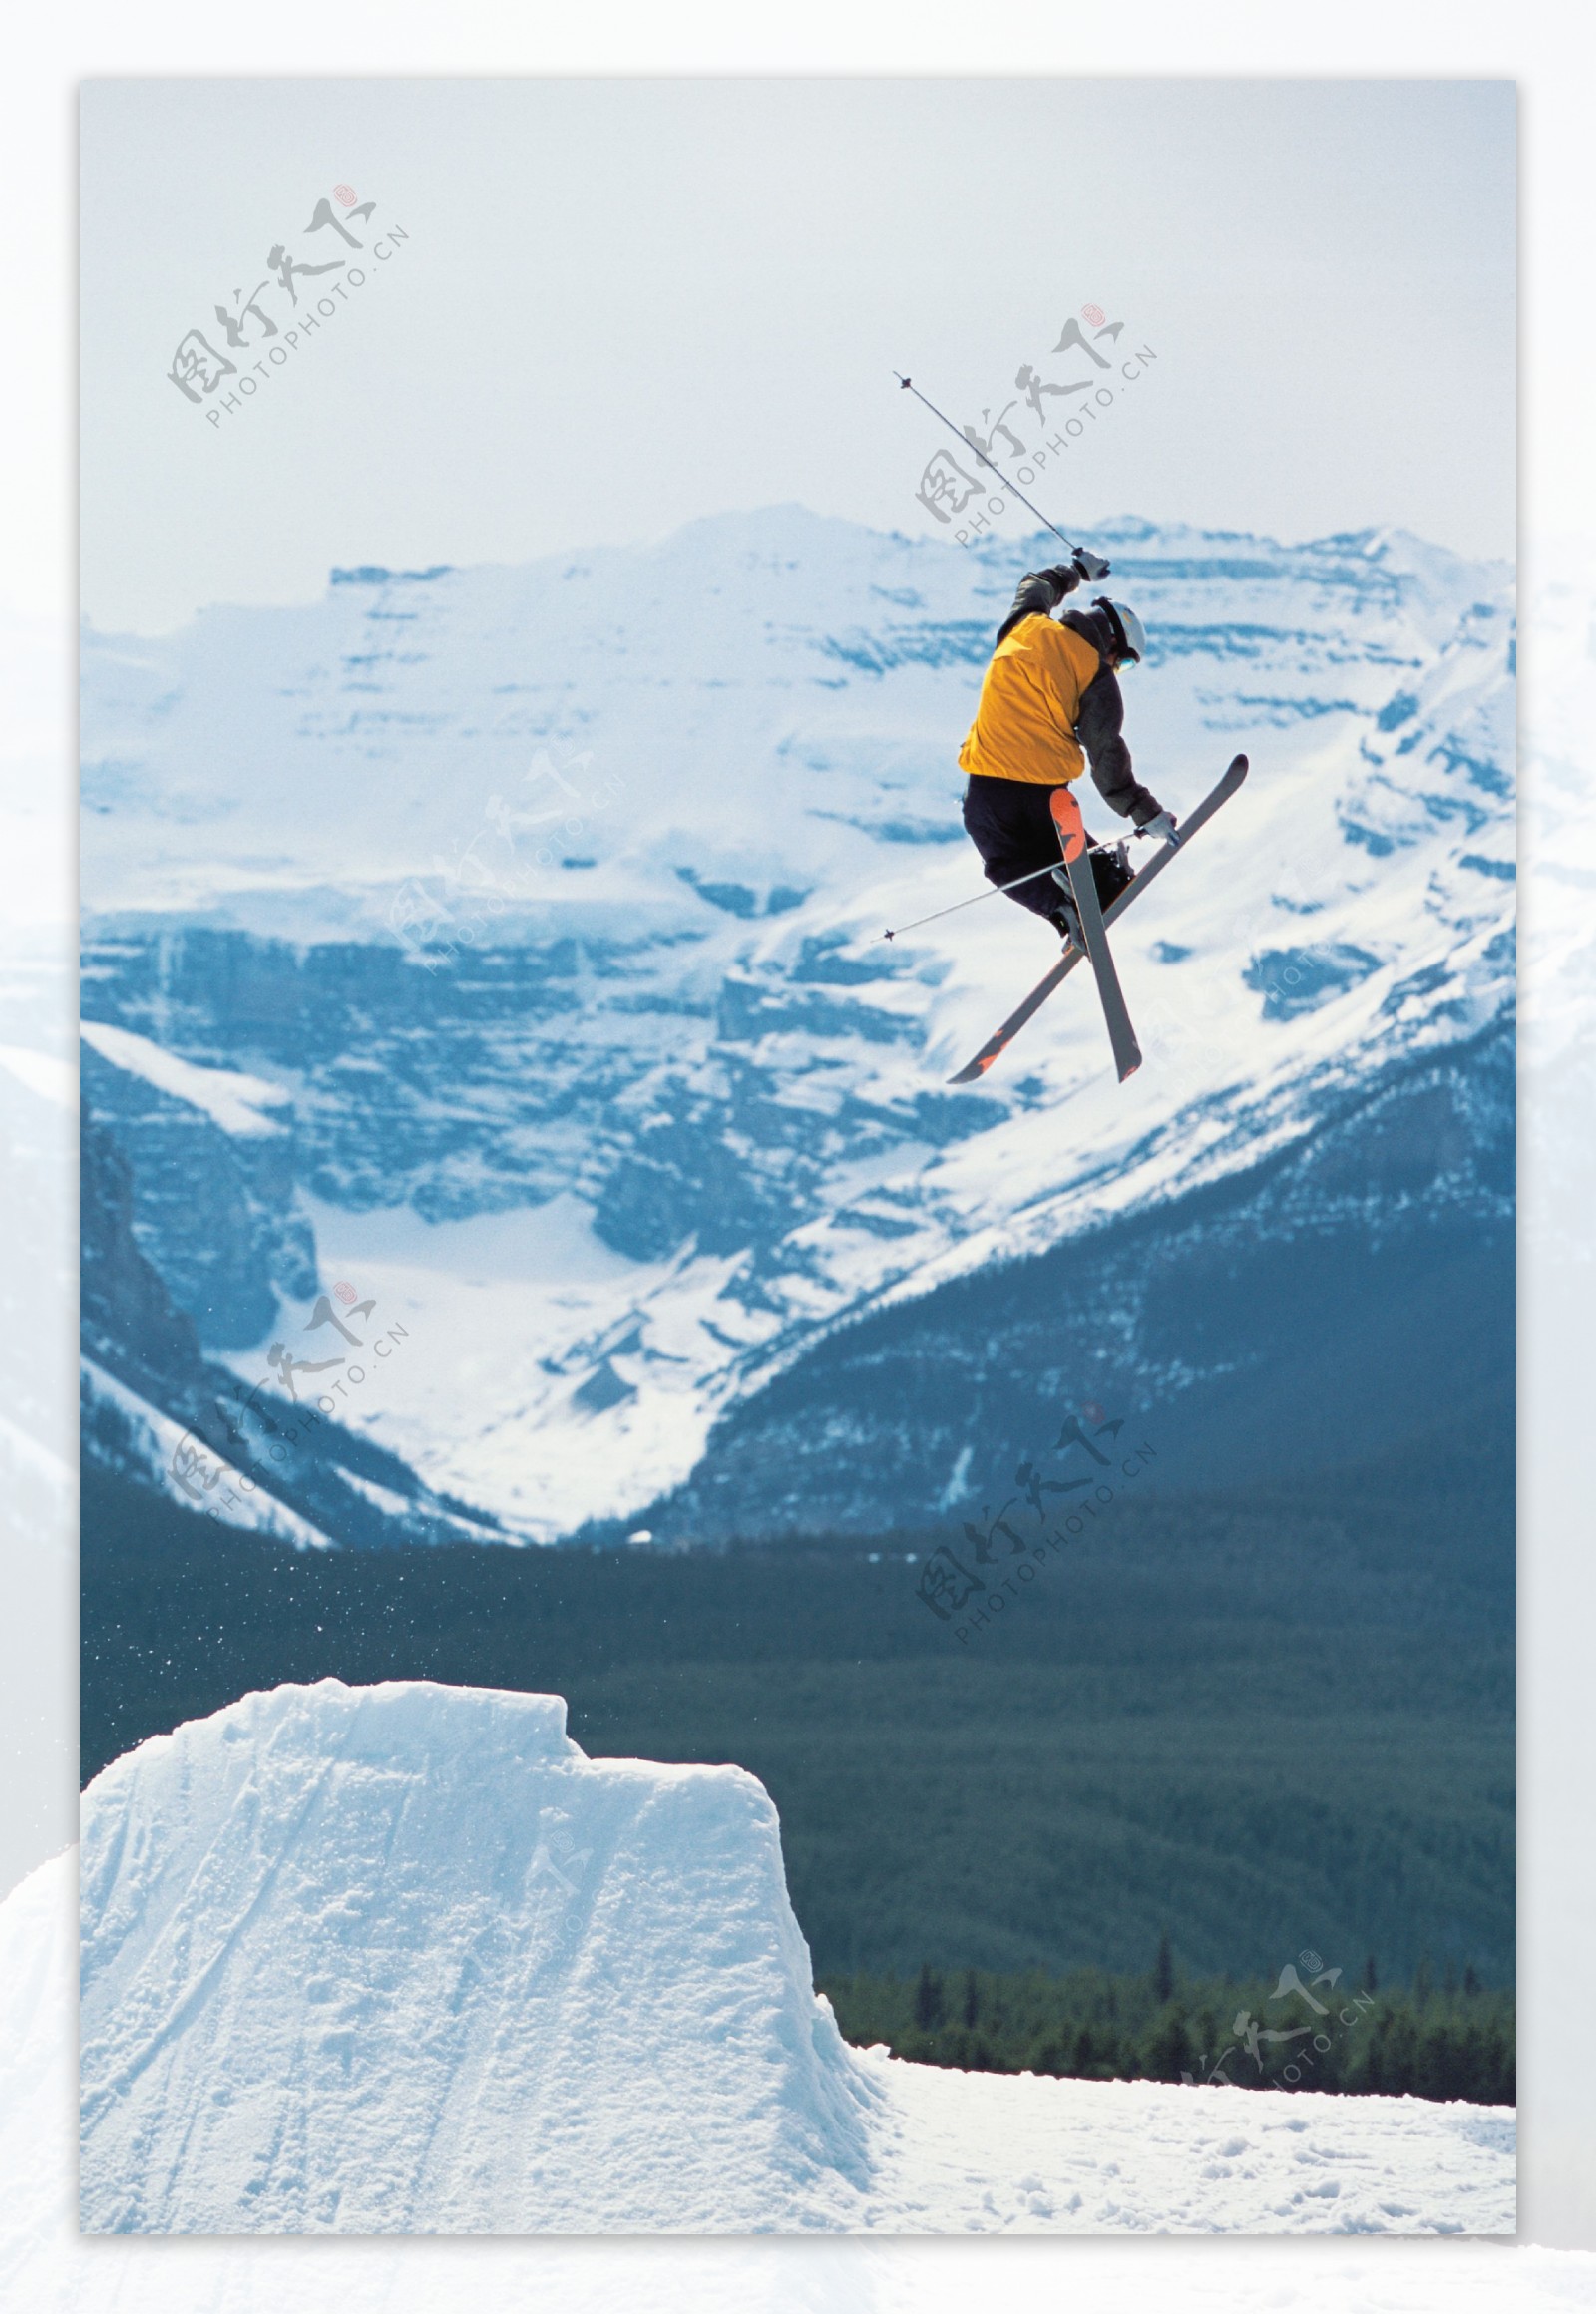 双板滑雪飞起瞬间摄影图片